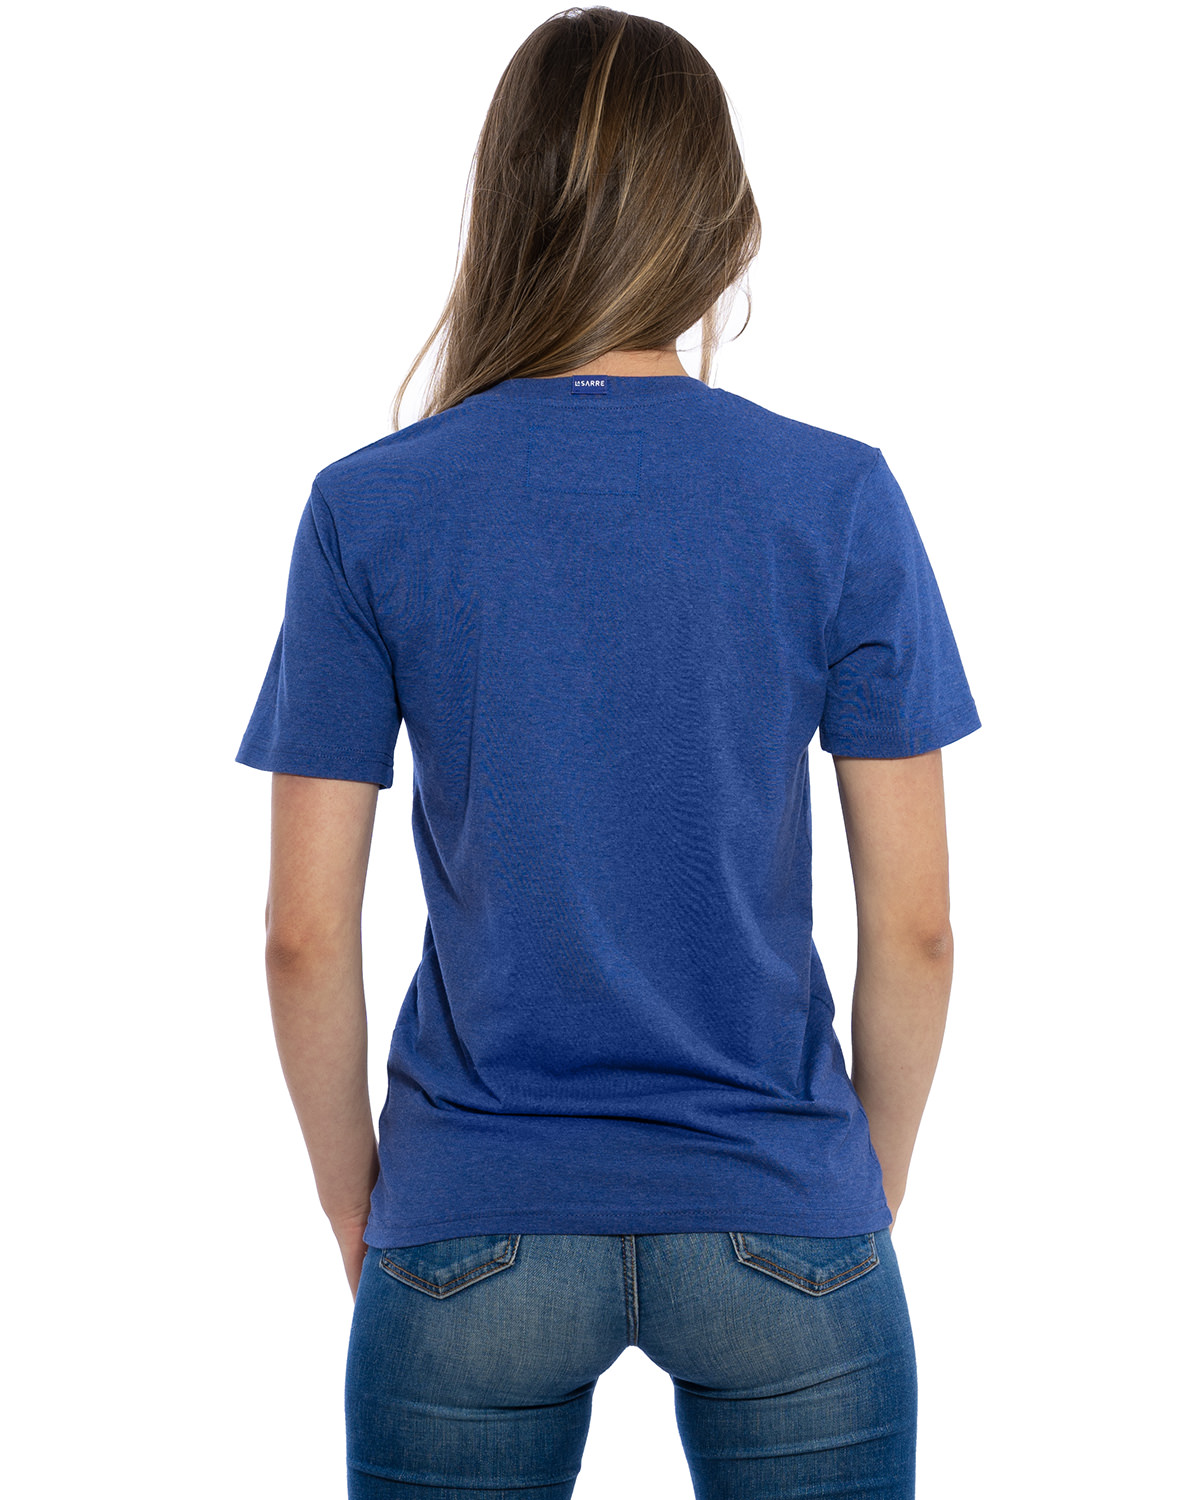 Rücken-Ansicht des hochwertig bestickten VIVE-LA-SARRE T-Shirt „CLAIRE“ für Frauen in der Farbe Kobalt von der Saarland Marke Lasarre mit dem LA-SARRE Wappen in Blau, Weiß, Rot auf der linken Brust und dem blauen LA-SARRE Markenzeichen am Saum